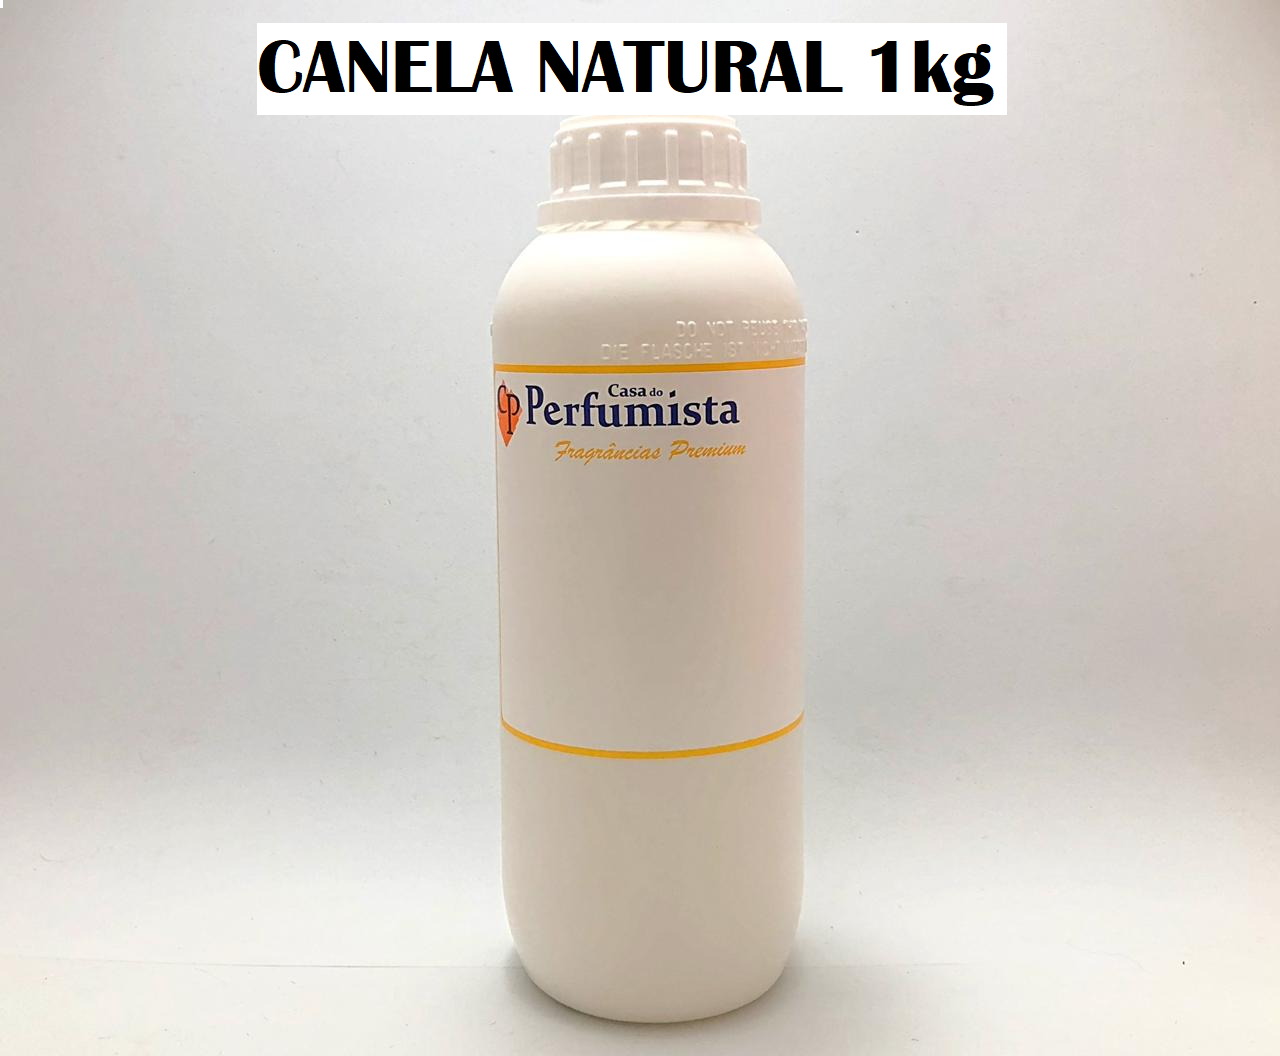 CANELA NATURAL - 1kg